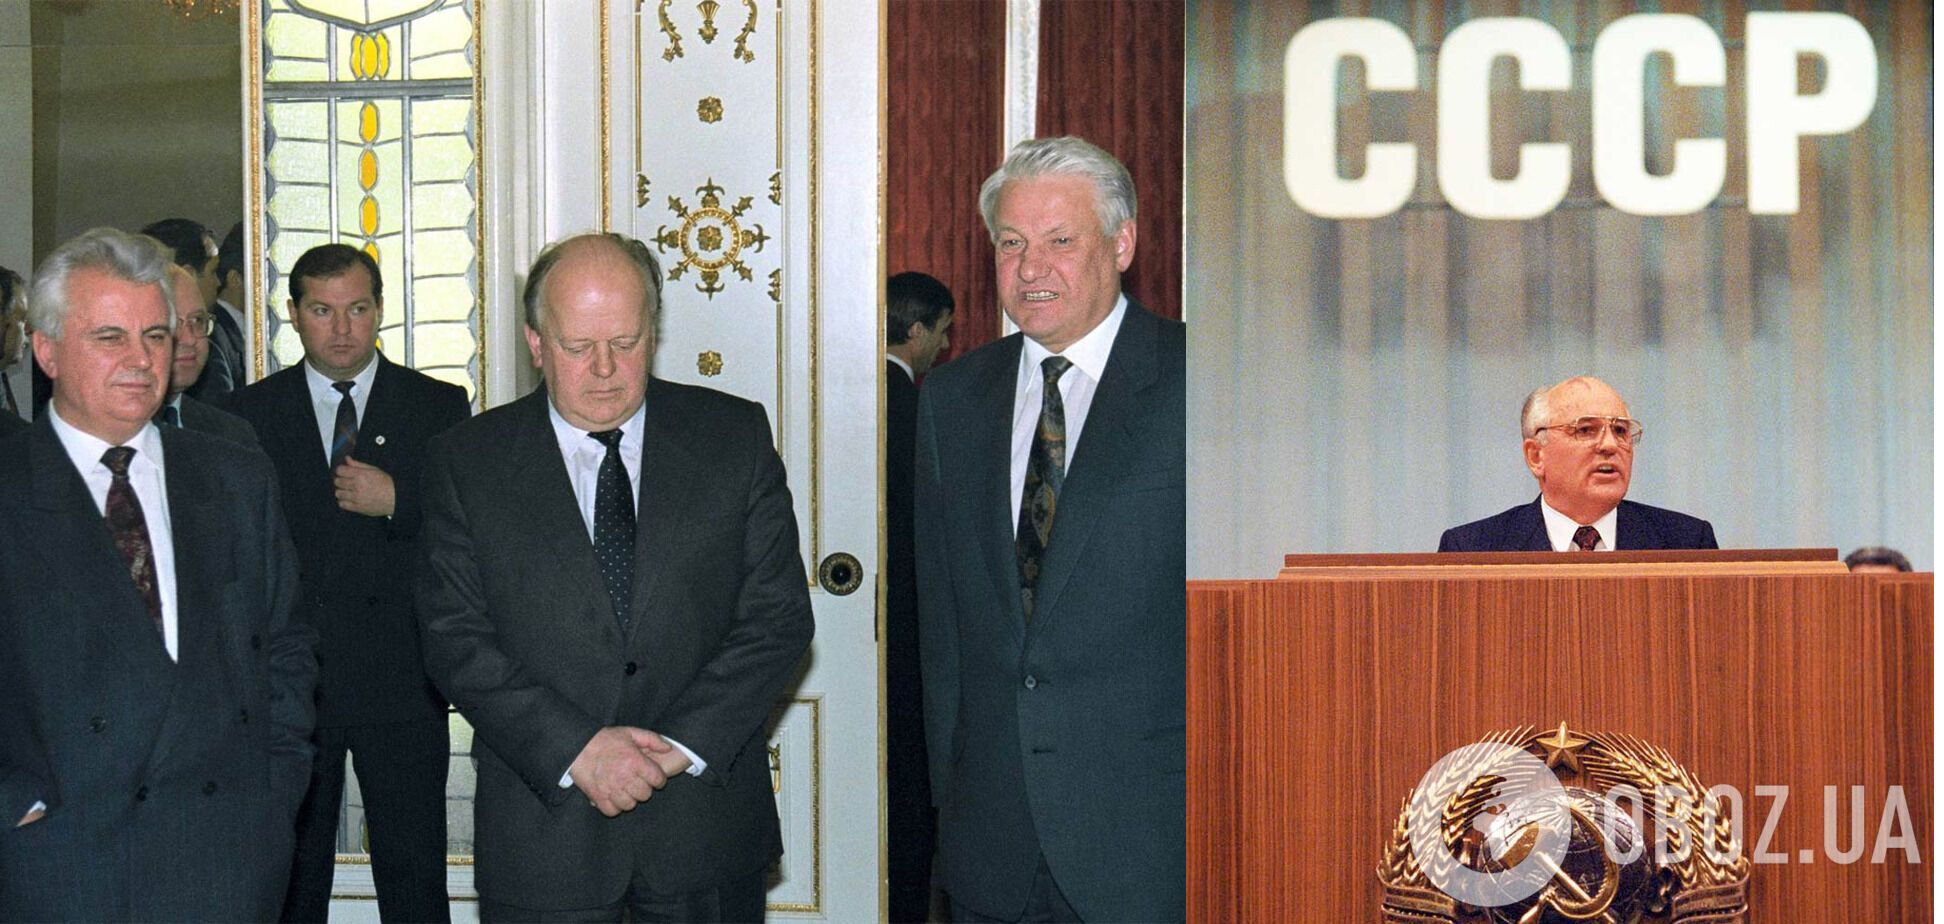 Леонид Кравчук, Станислав Шушкевич и Борис Ельцин (слева направо) после подписания Беловежского соглашения; Михаил Горбачев